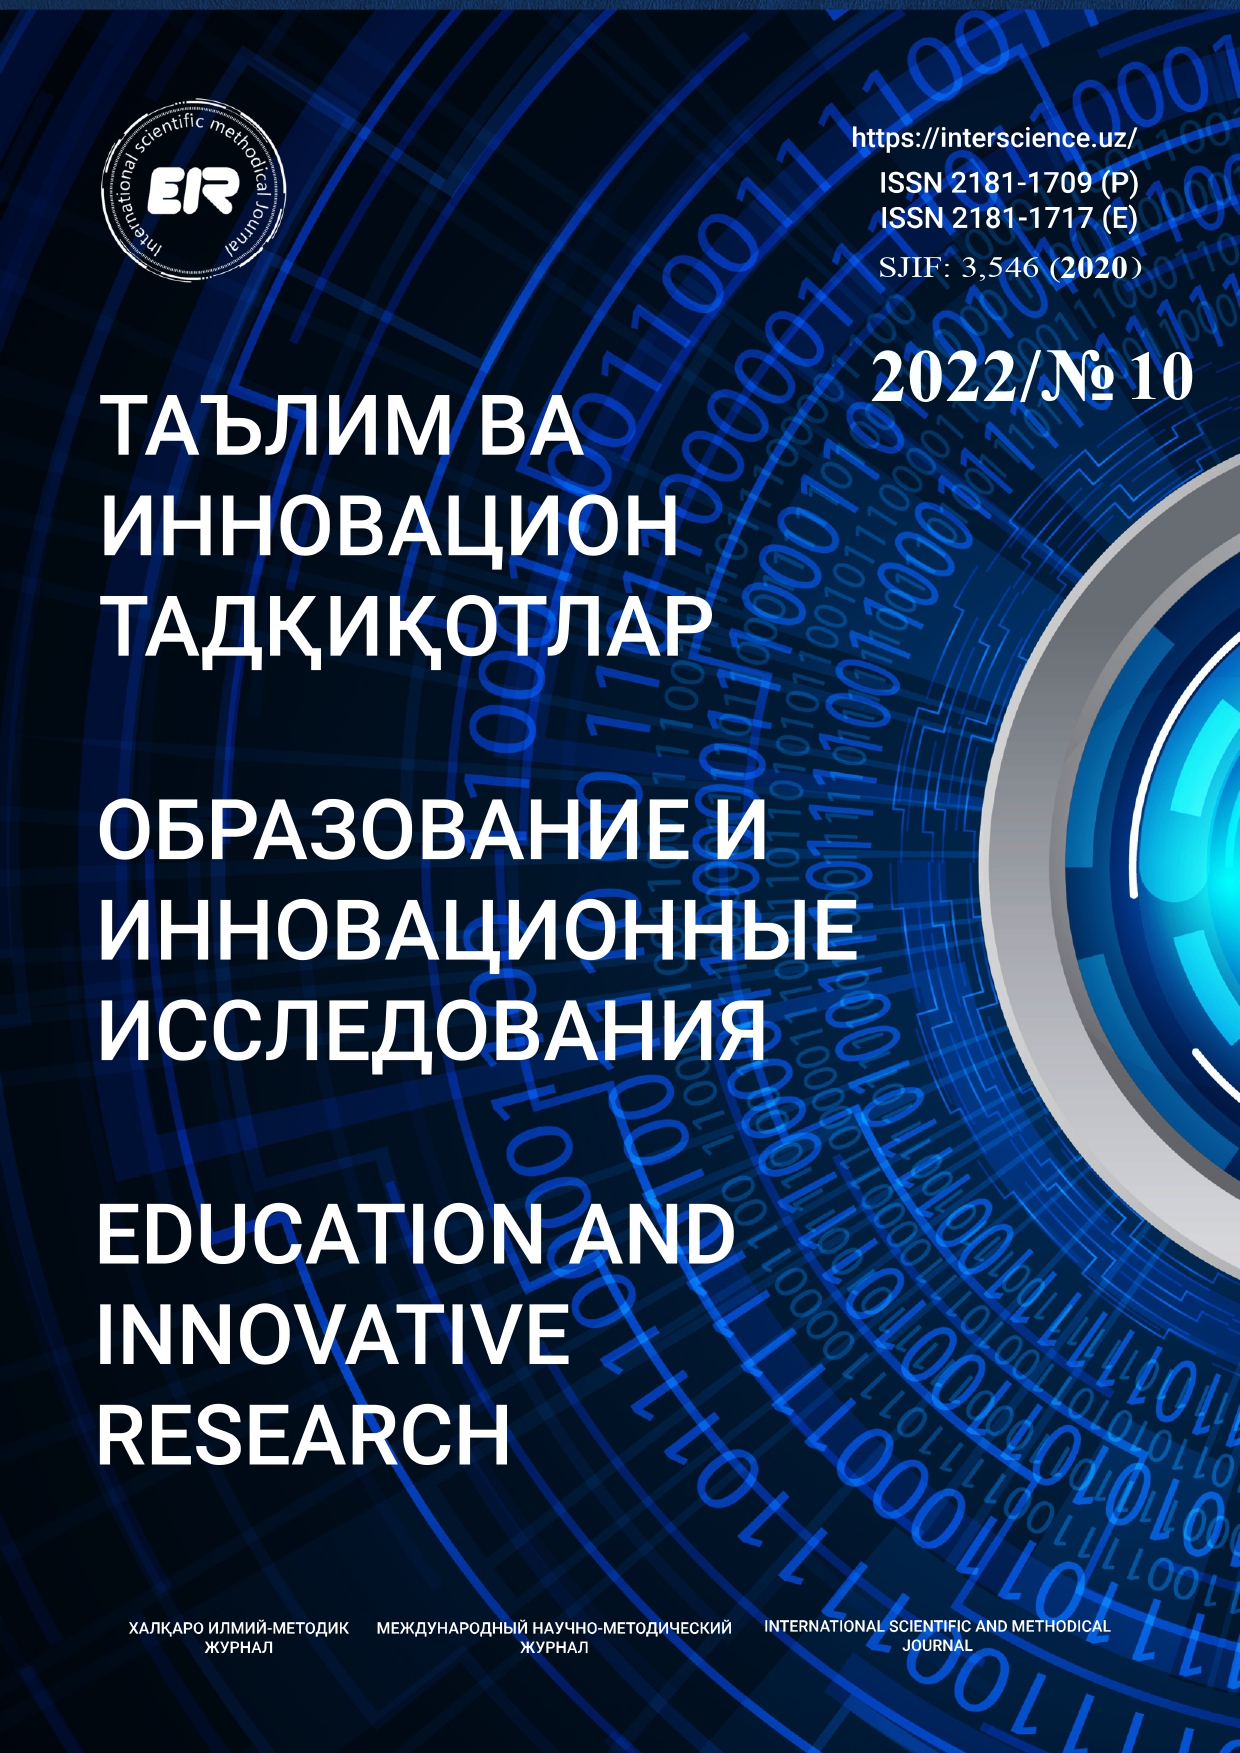 					Показать № 10 (2022): Образование и инновационные исследования
				